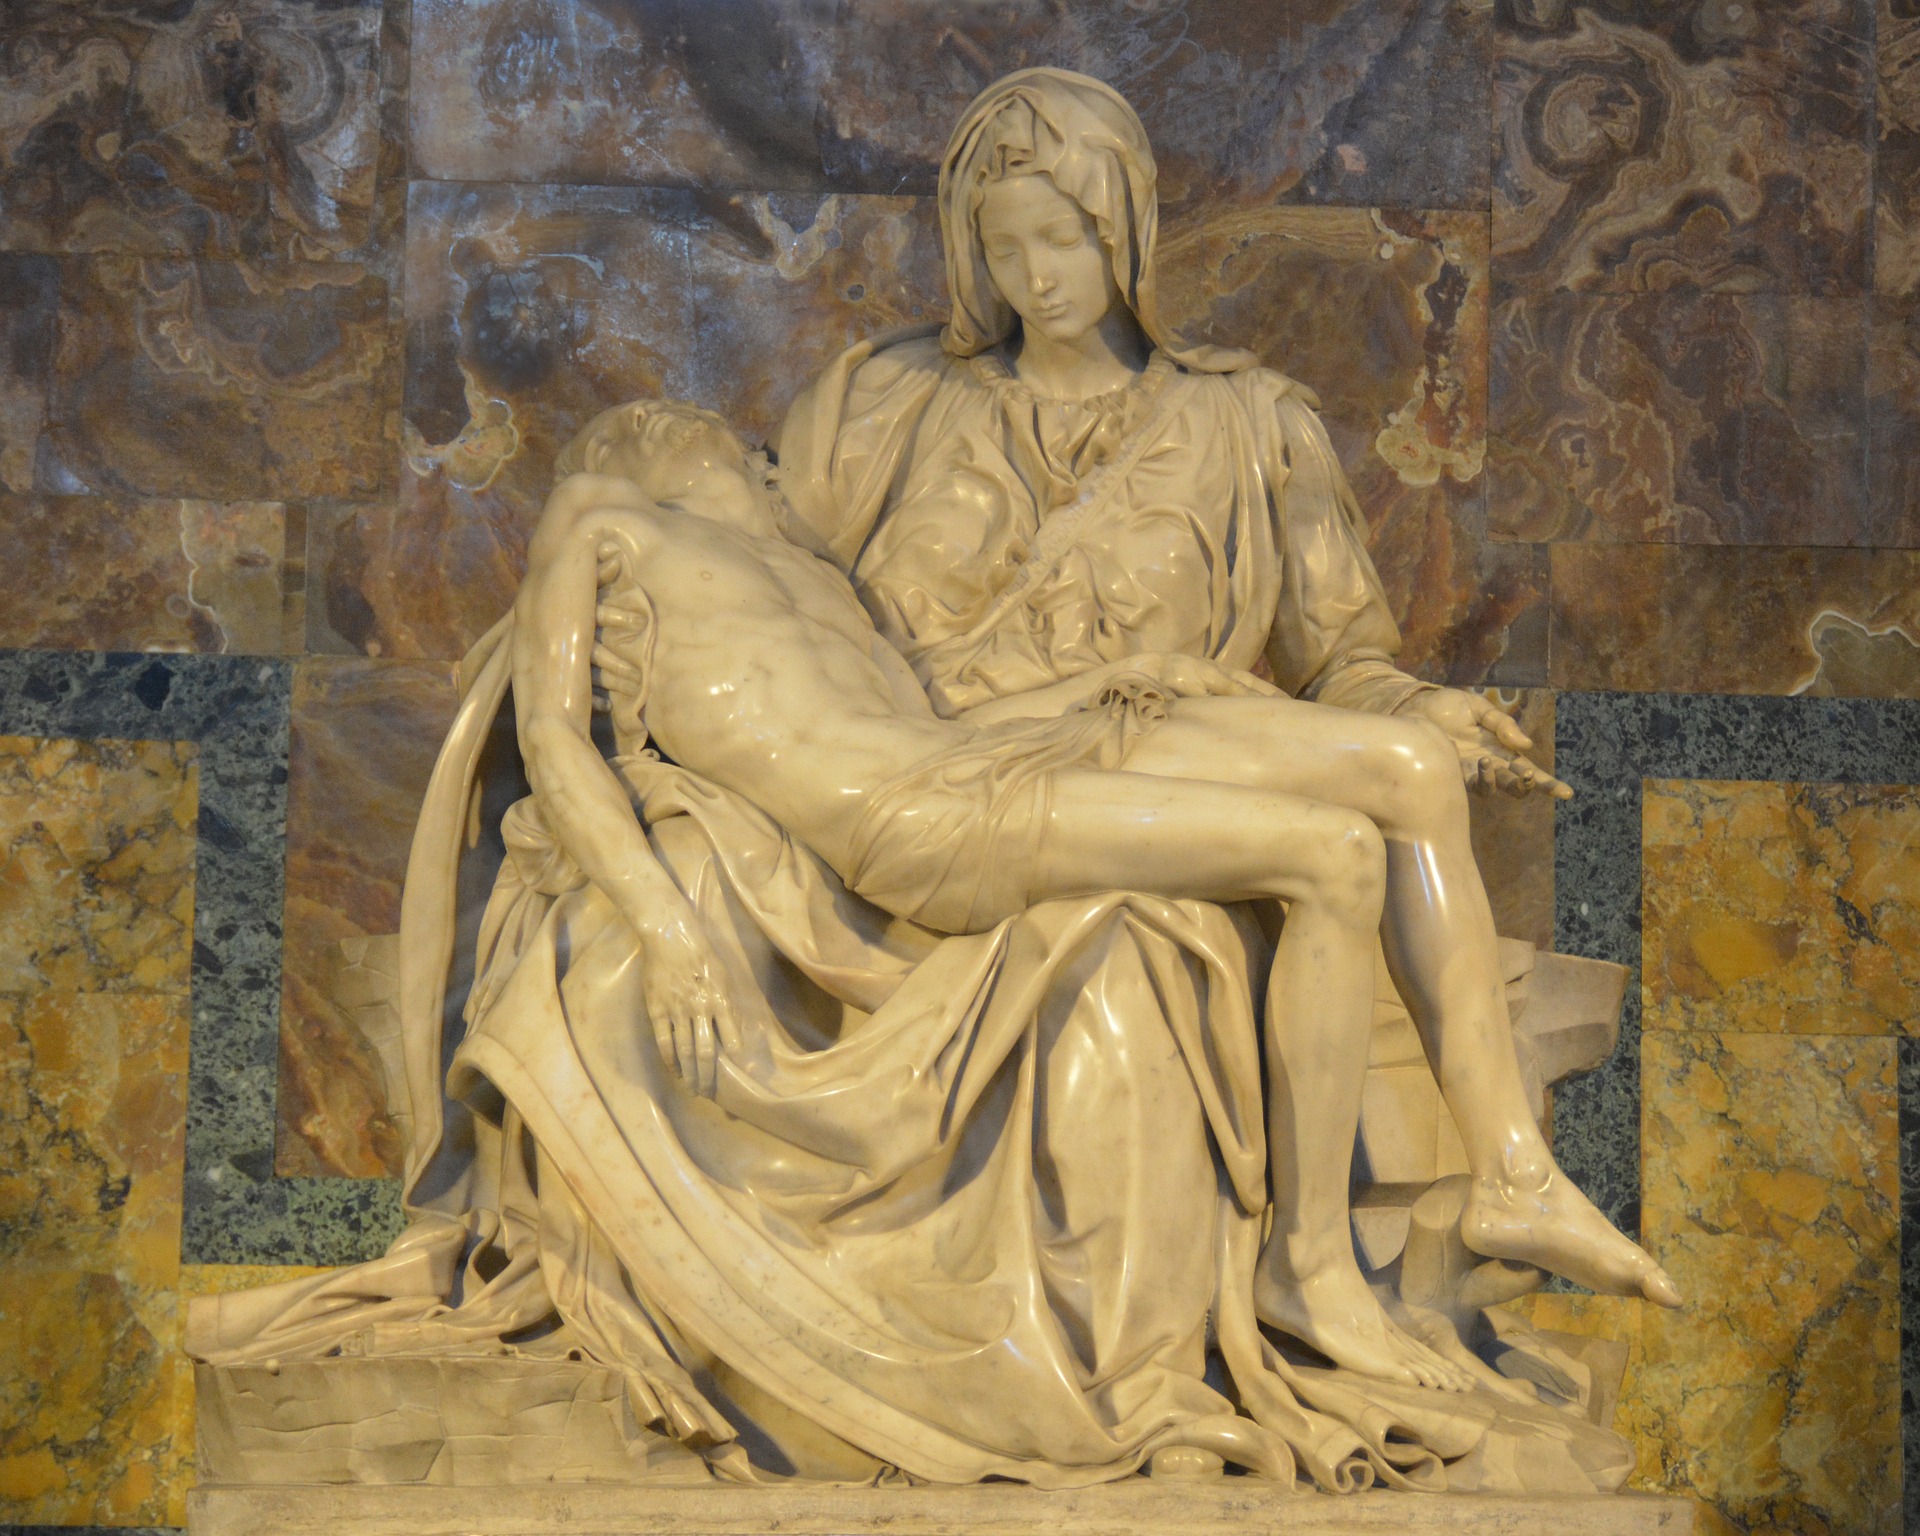 La Pietà by Michelangelo - St. Peter's Basilica Vatican